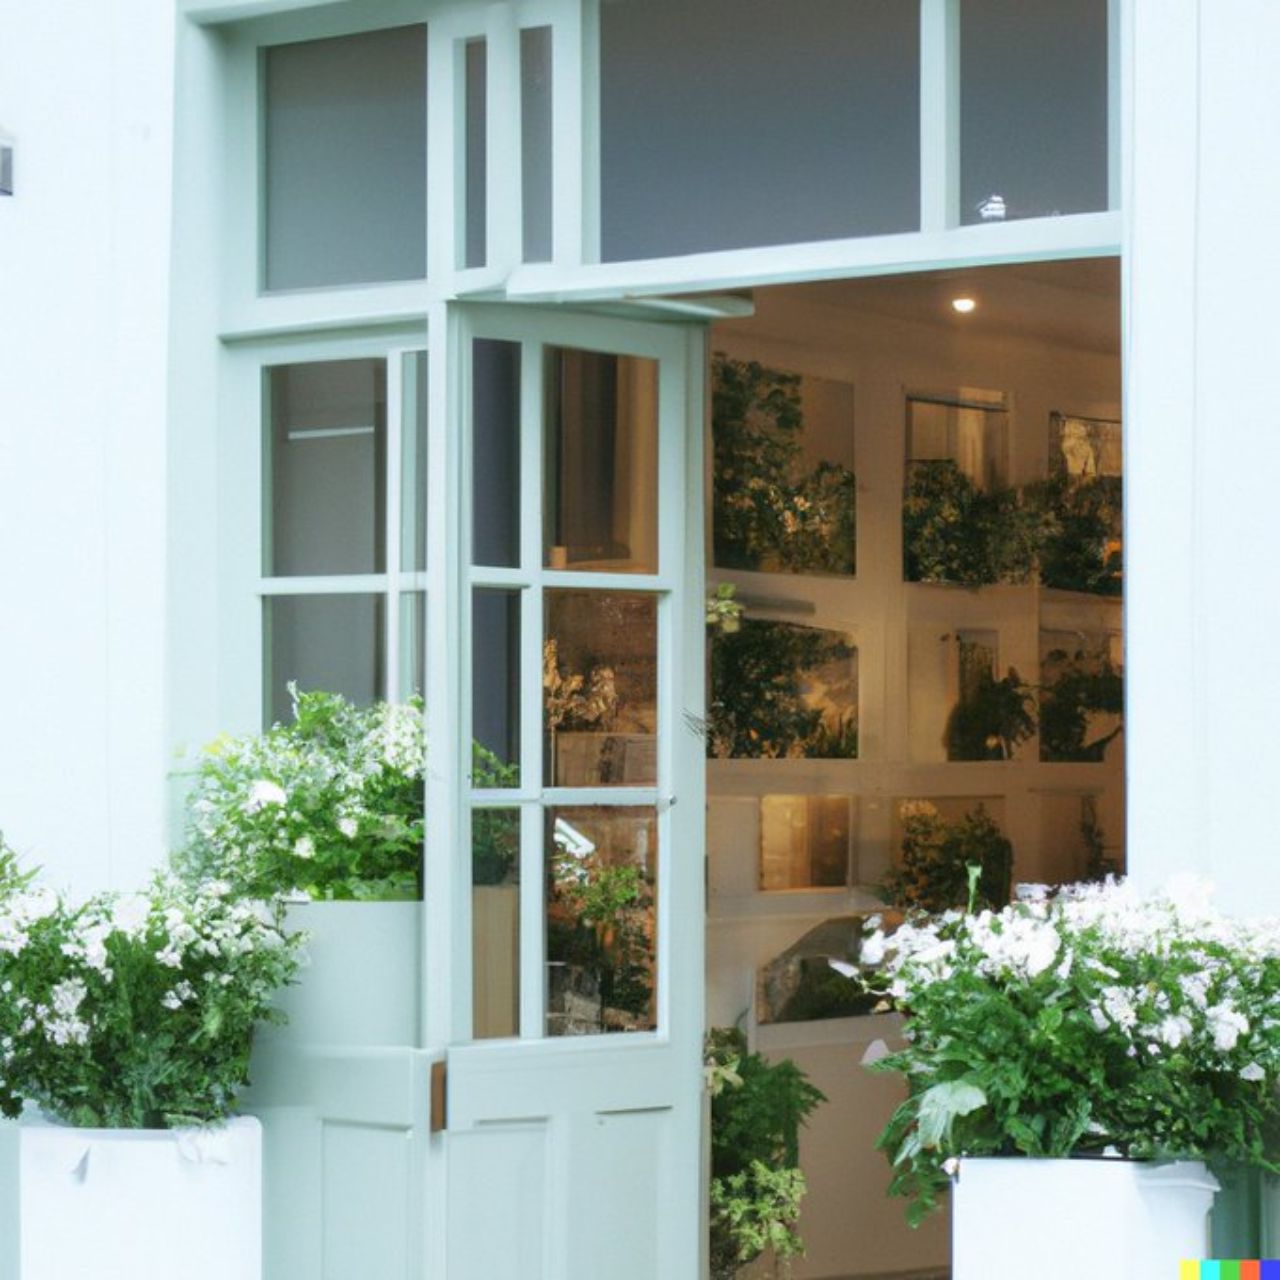 «Фото справжньої вітрини квіткового магазину з пастельно-зеленим та чистим білим фасадом, відкритими дверима та великим вікном»